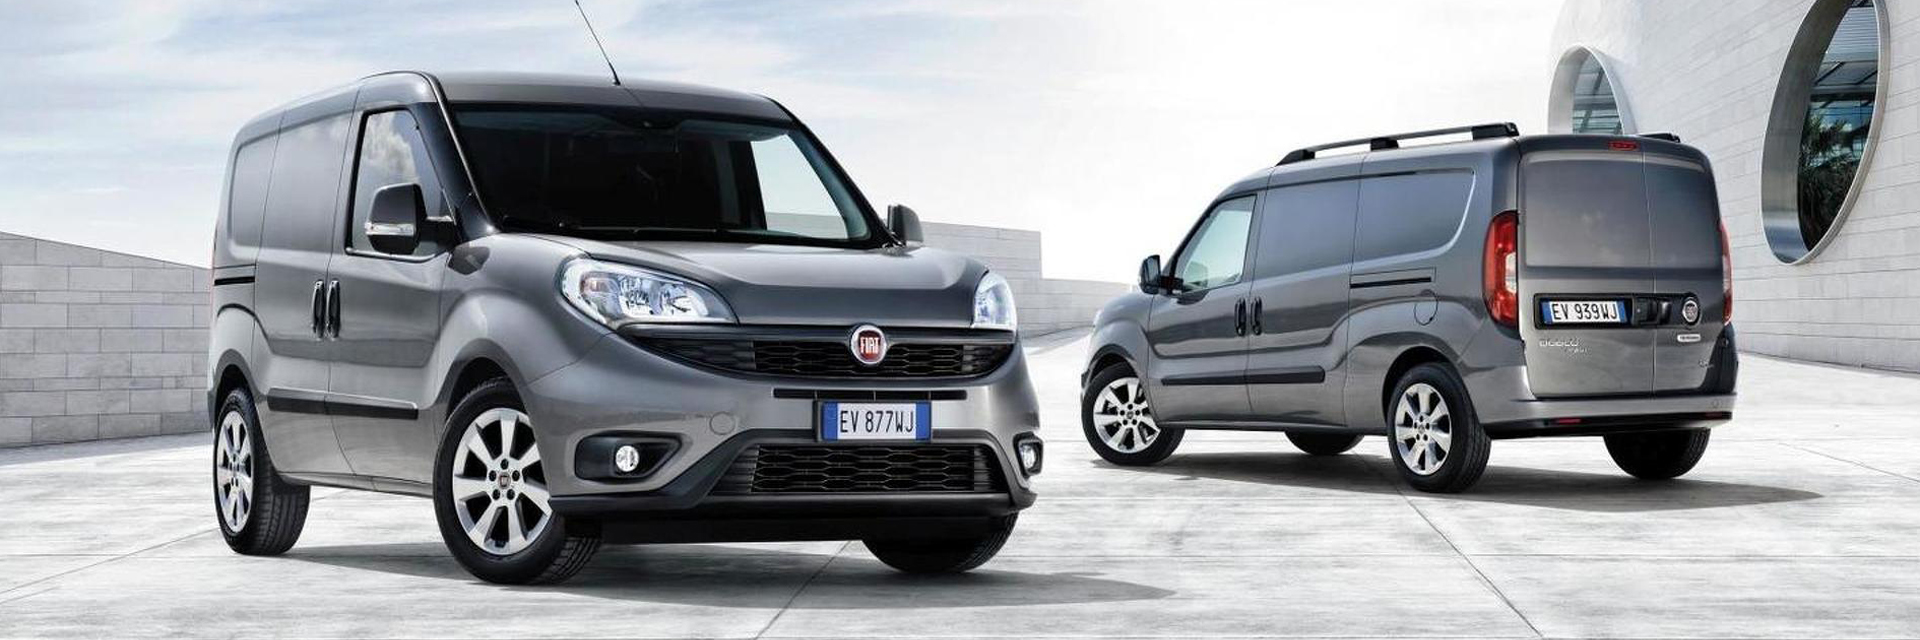 Fiat Dobló, carros usados, Carros novos, carros de serviço